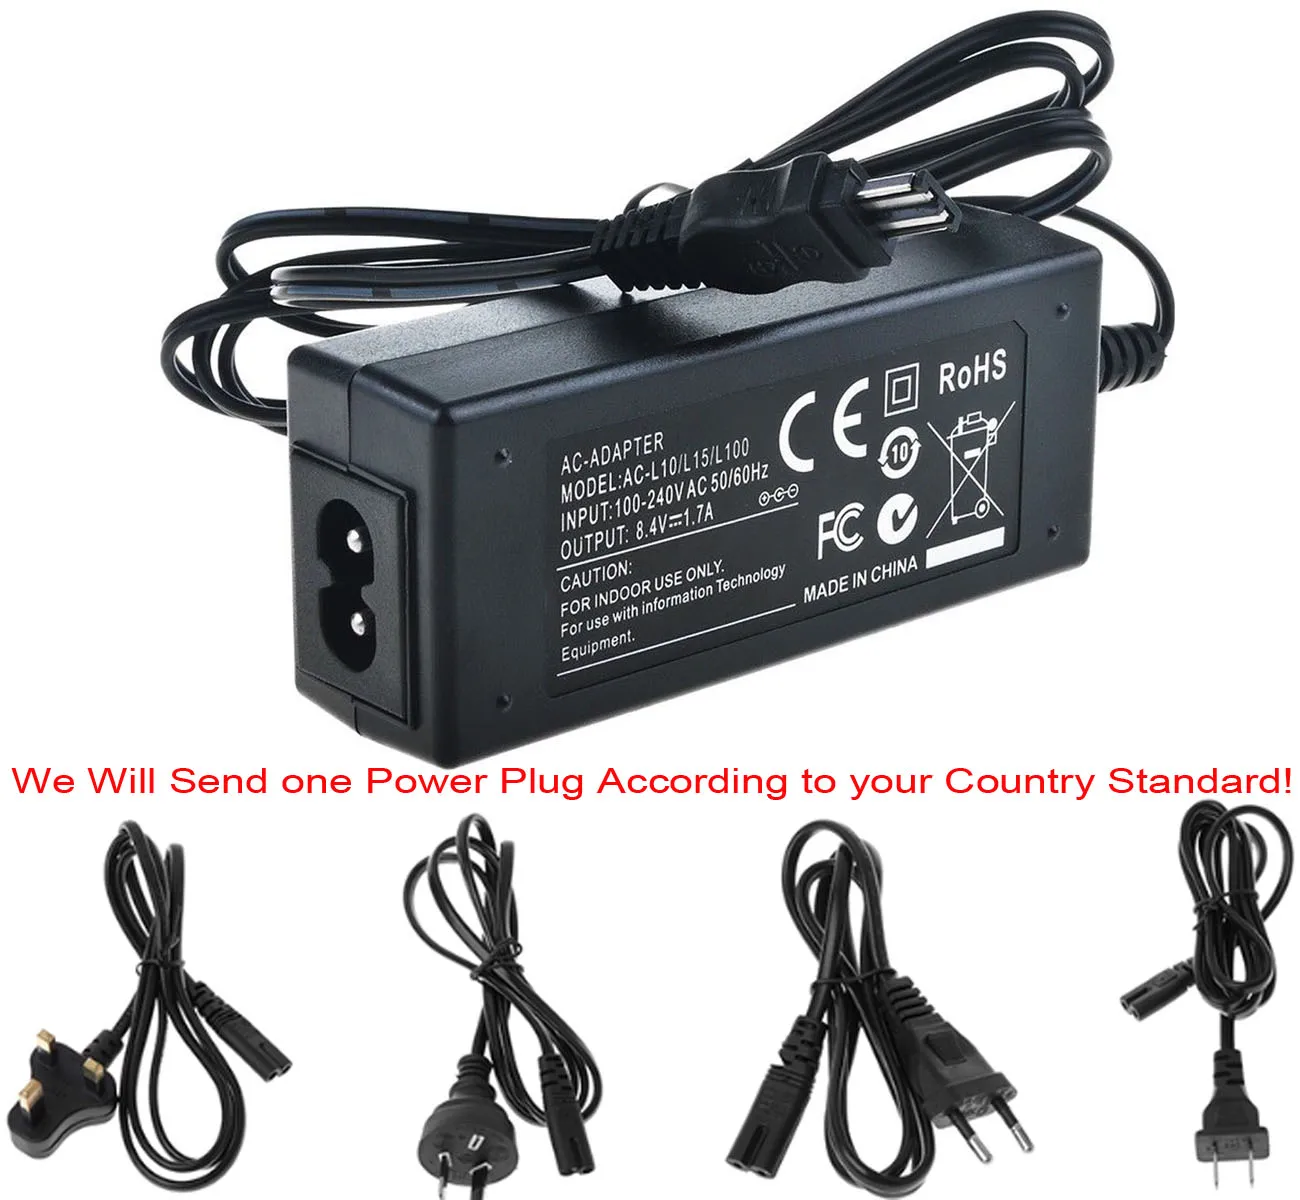 AC Мощность адаптер Зарядное устройство для sony CCD-TRV65, CCD-TRV66, CCD-TRV67, CCD-TRV68, CCD-TRV69, CCD-TRV89, CCD-TRV99 Handycam